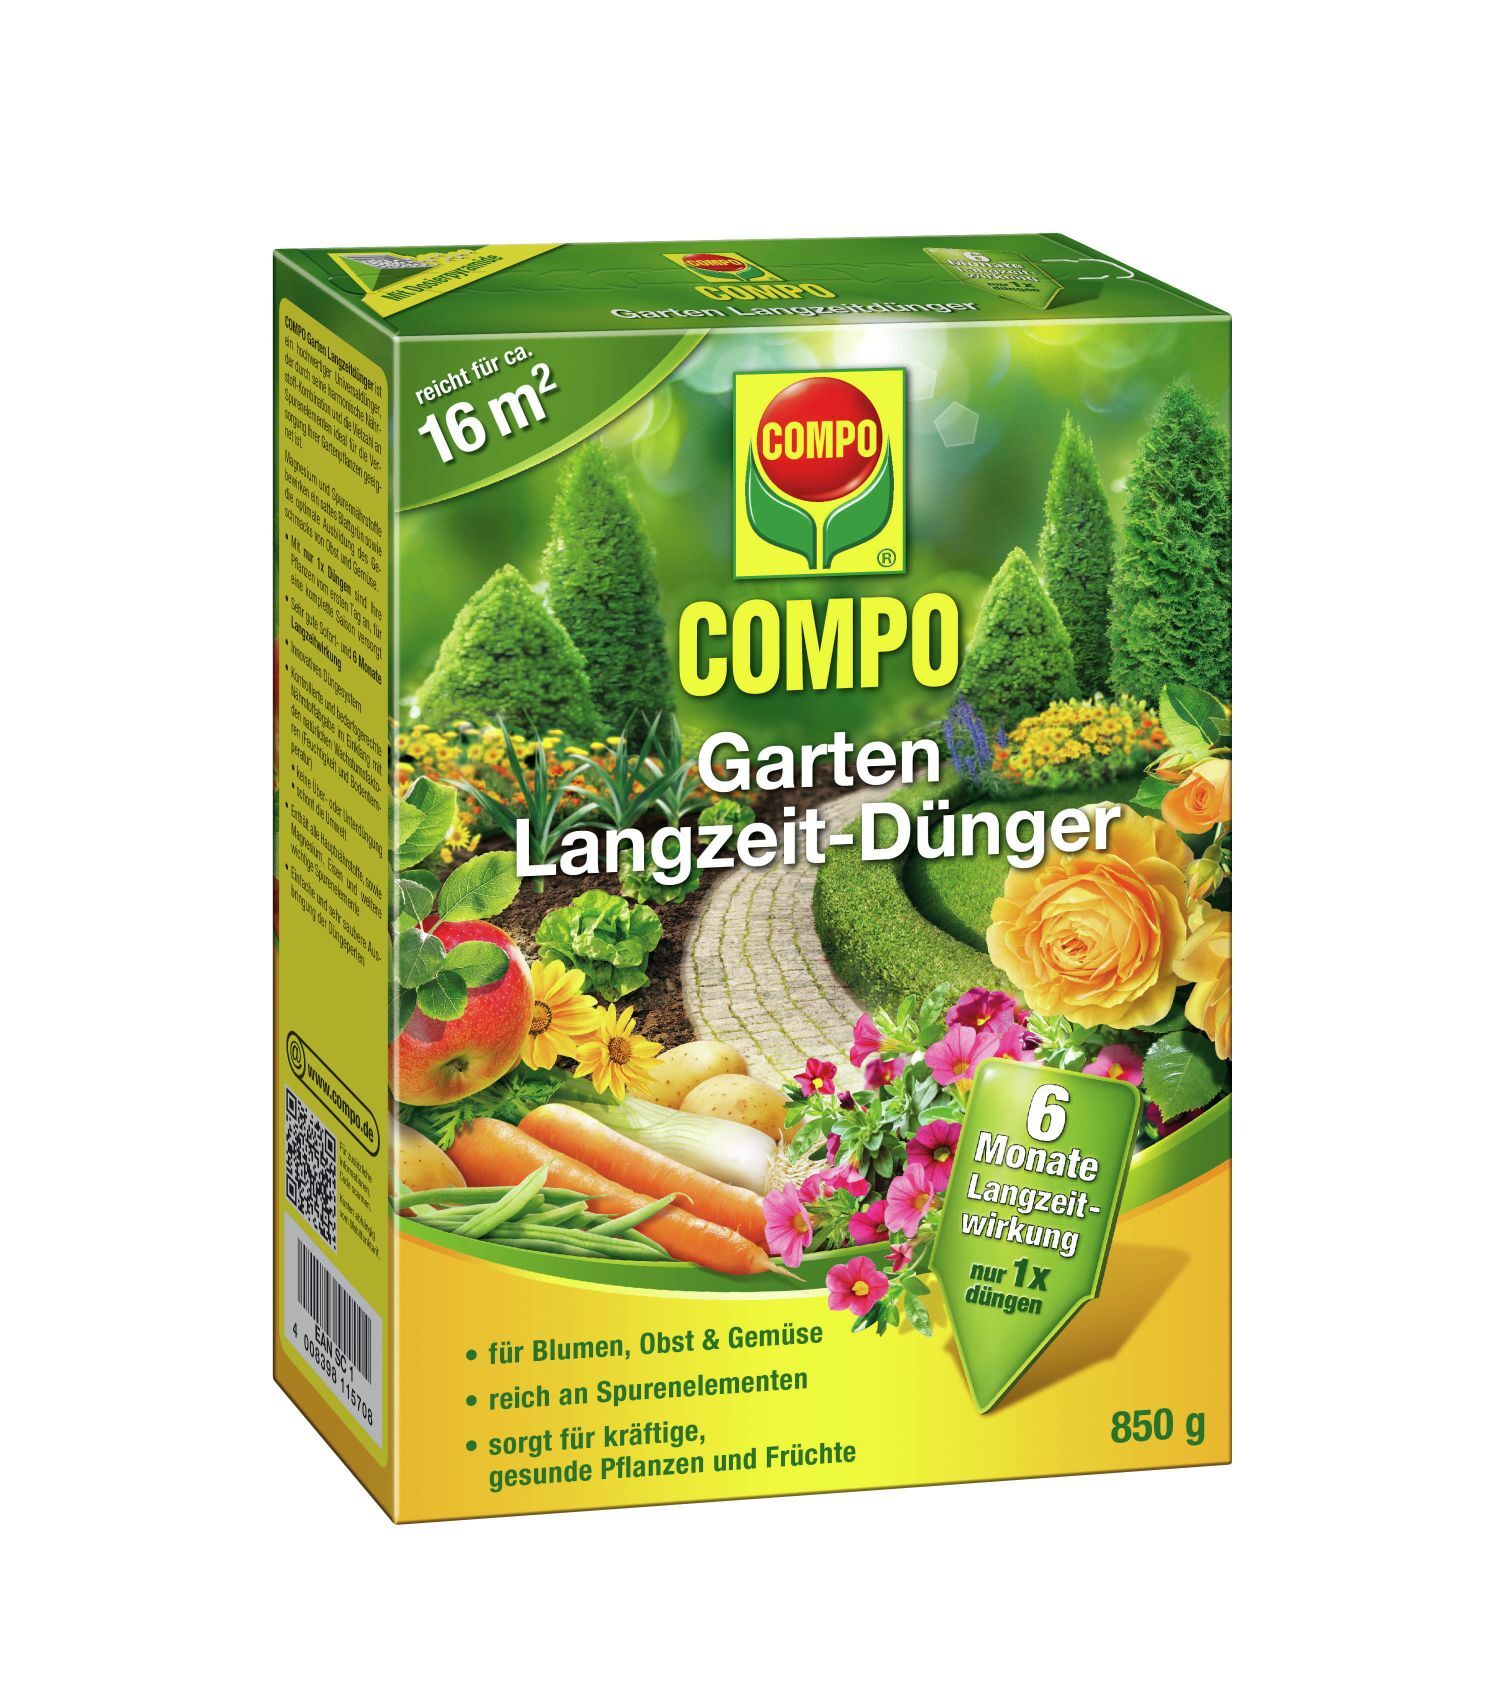 Compo GmbH Garten Langzeit-Dünger